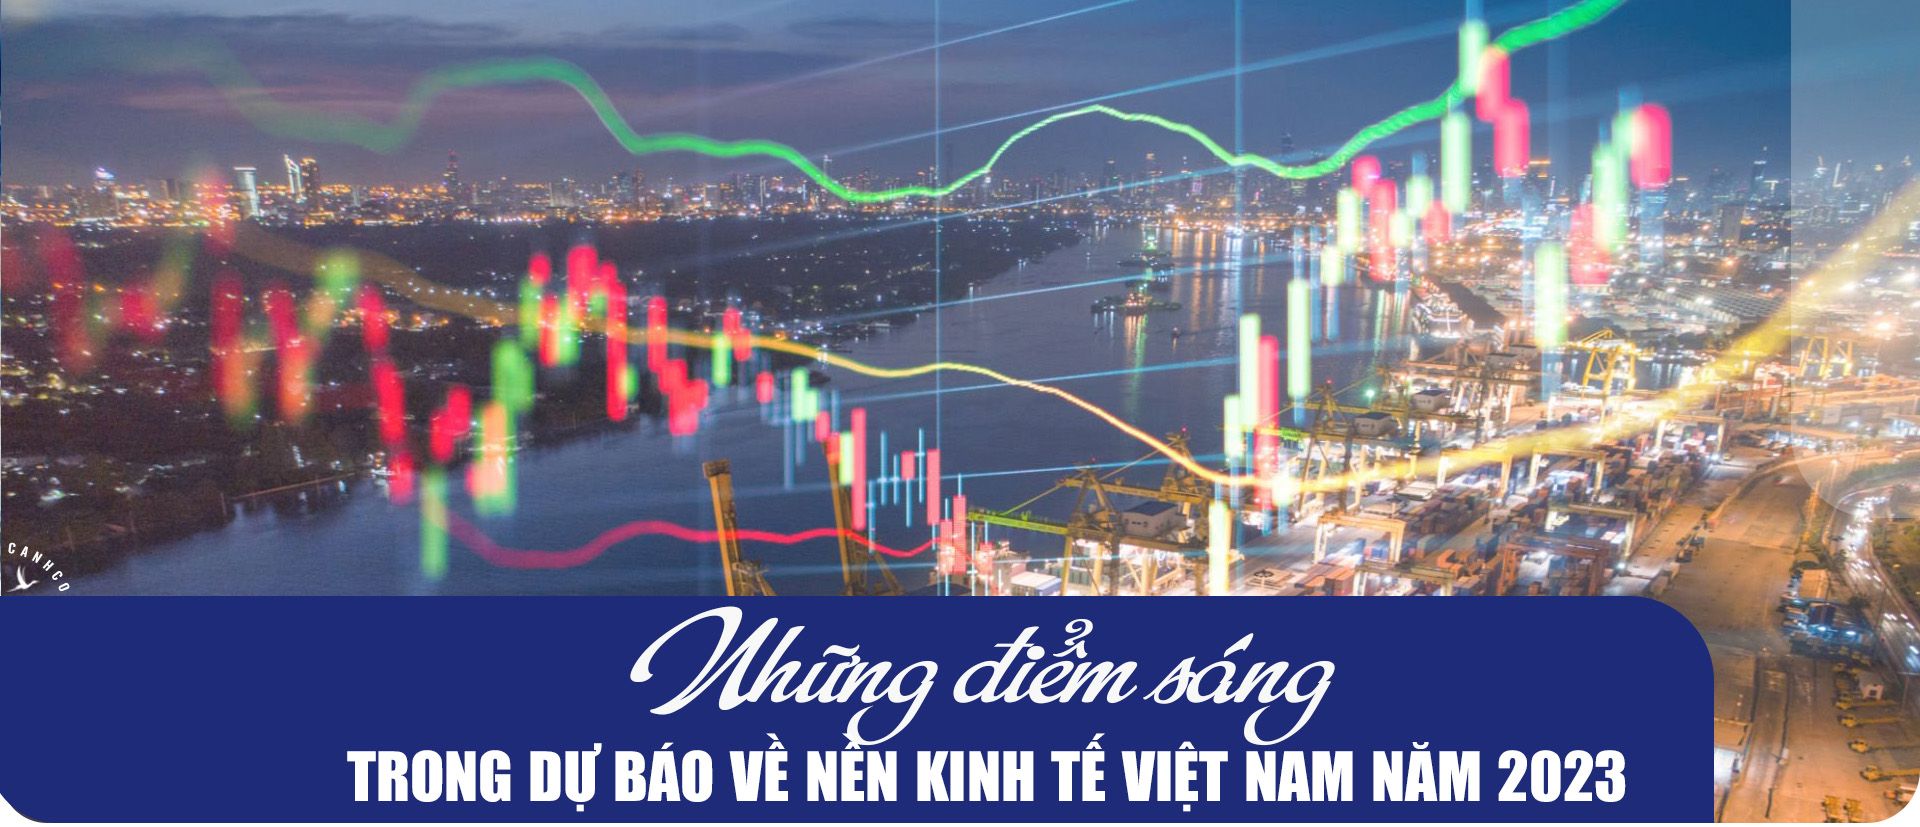 Những điểm sáng trong dự báo về nền kinh tế Việt Nam năm 2023